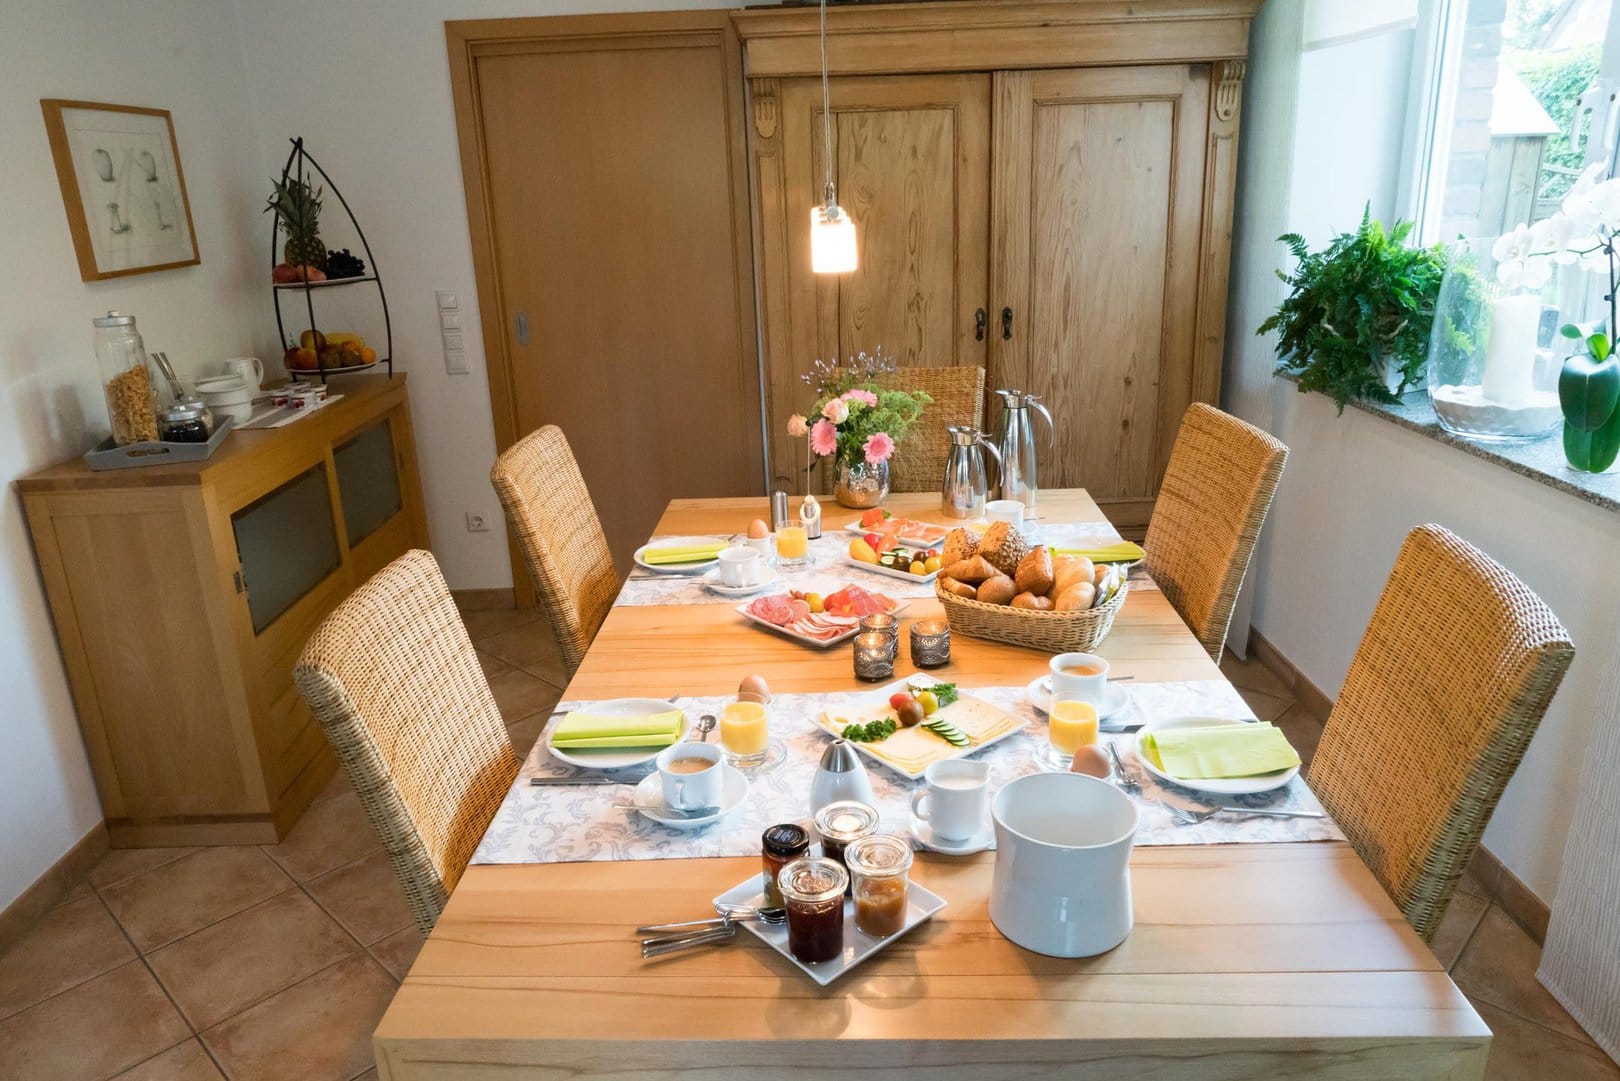 Ein hölzerner Tisch für vier Personen gedeckt mit einer Brotauswahl, Wurst und Käse, sowie Marmeladen, Joghurts und Kaffee steht in einem hellen Zimmer. Im Hintergrund ist eine Kommode zu sehen auf der Müslis und Früchte angerichtet sind.